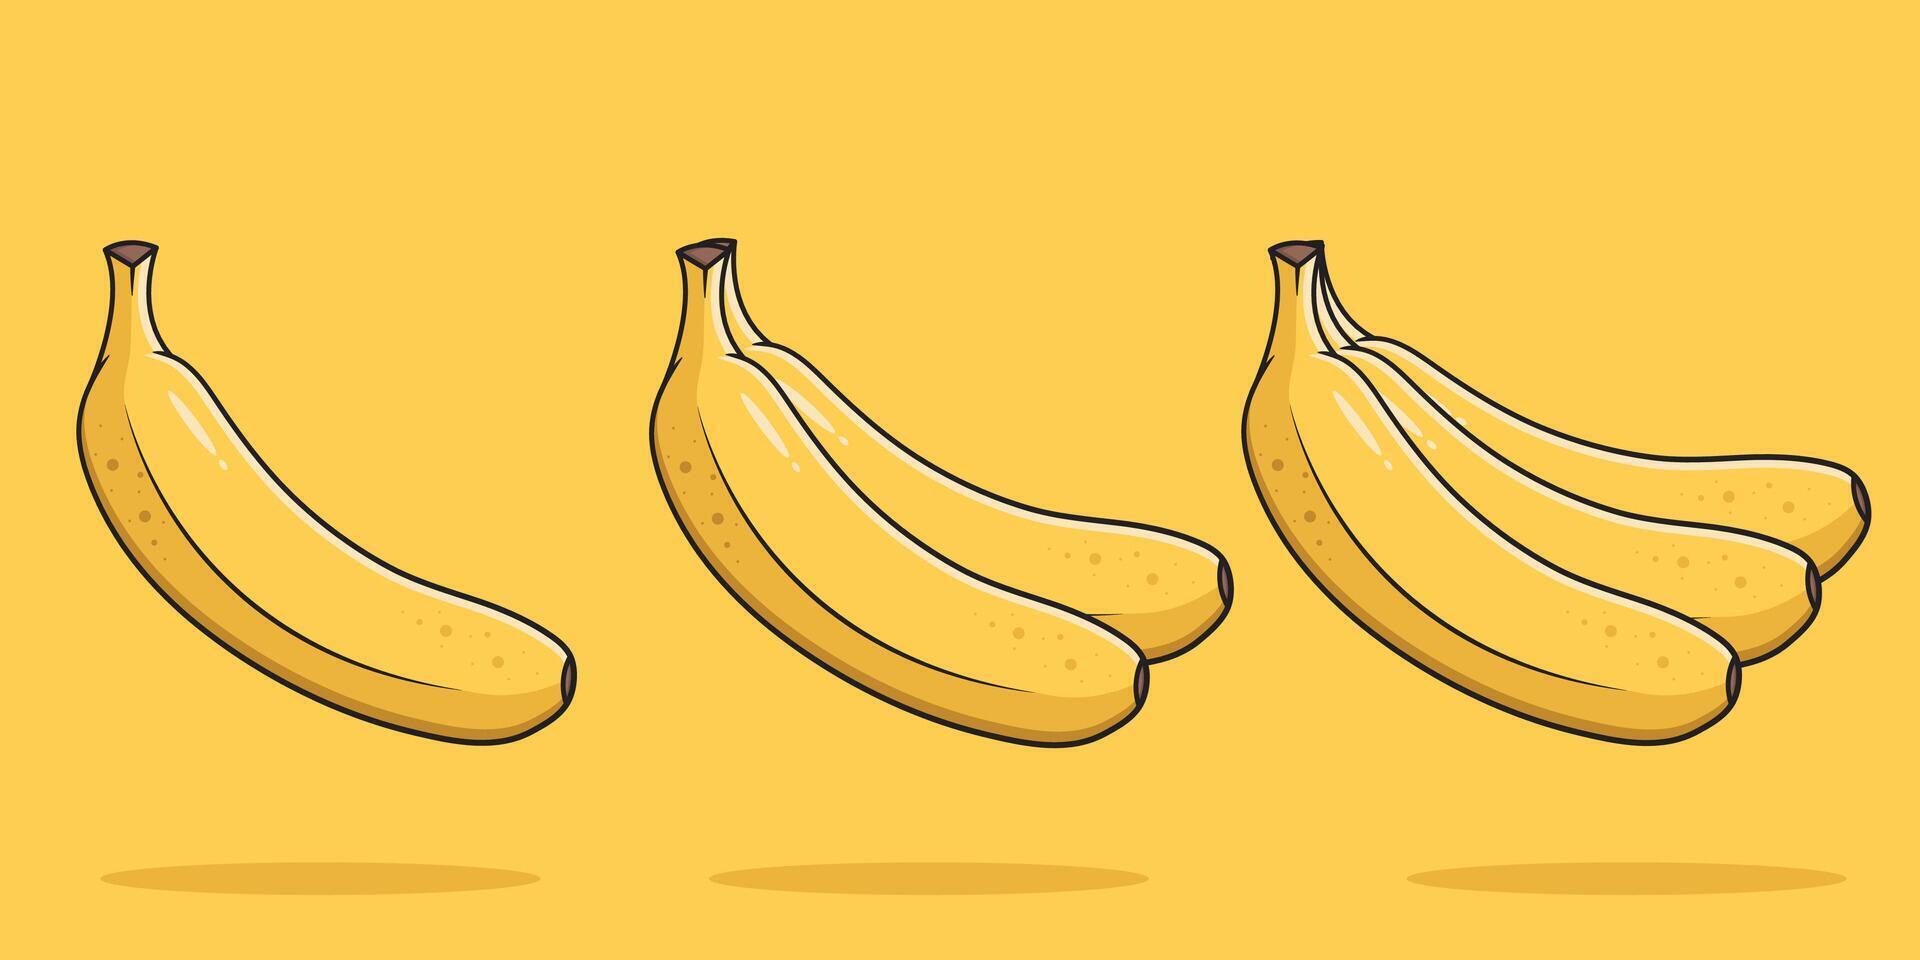 vektor bananer och knippa av bananer tecknad serie stil bananer på gul bakgrund vektor illustration